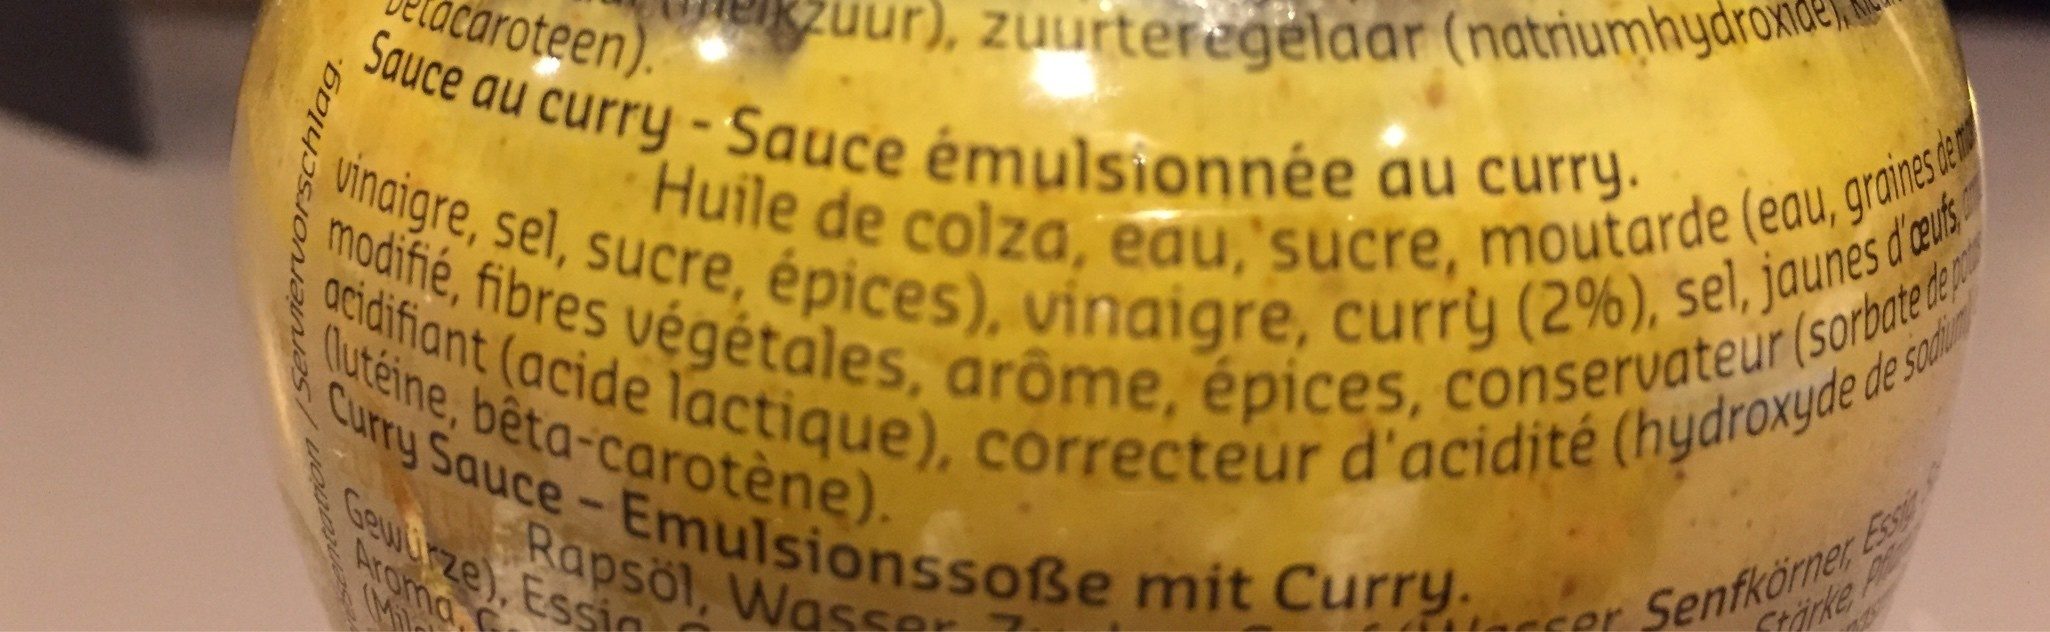 Sauce Curry 300mL - Ingrediënten - fr